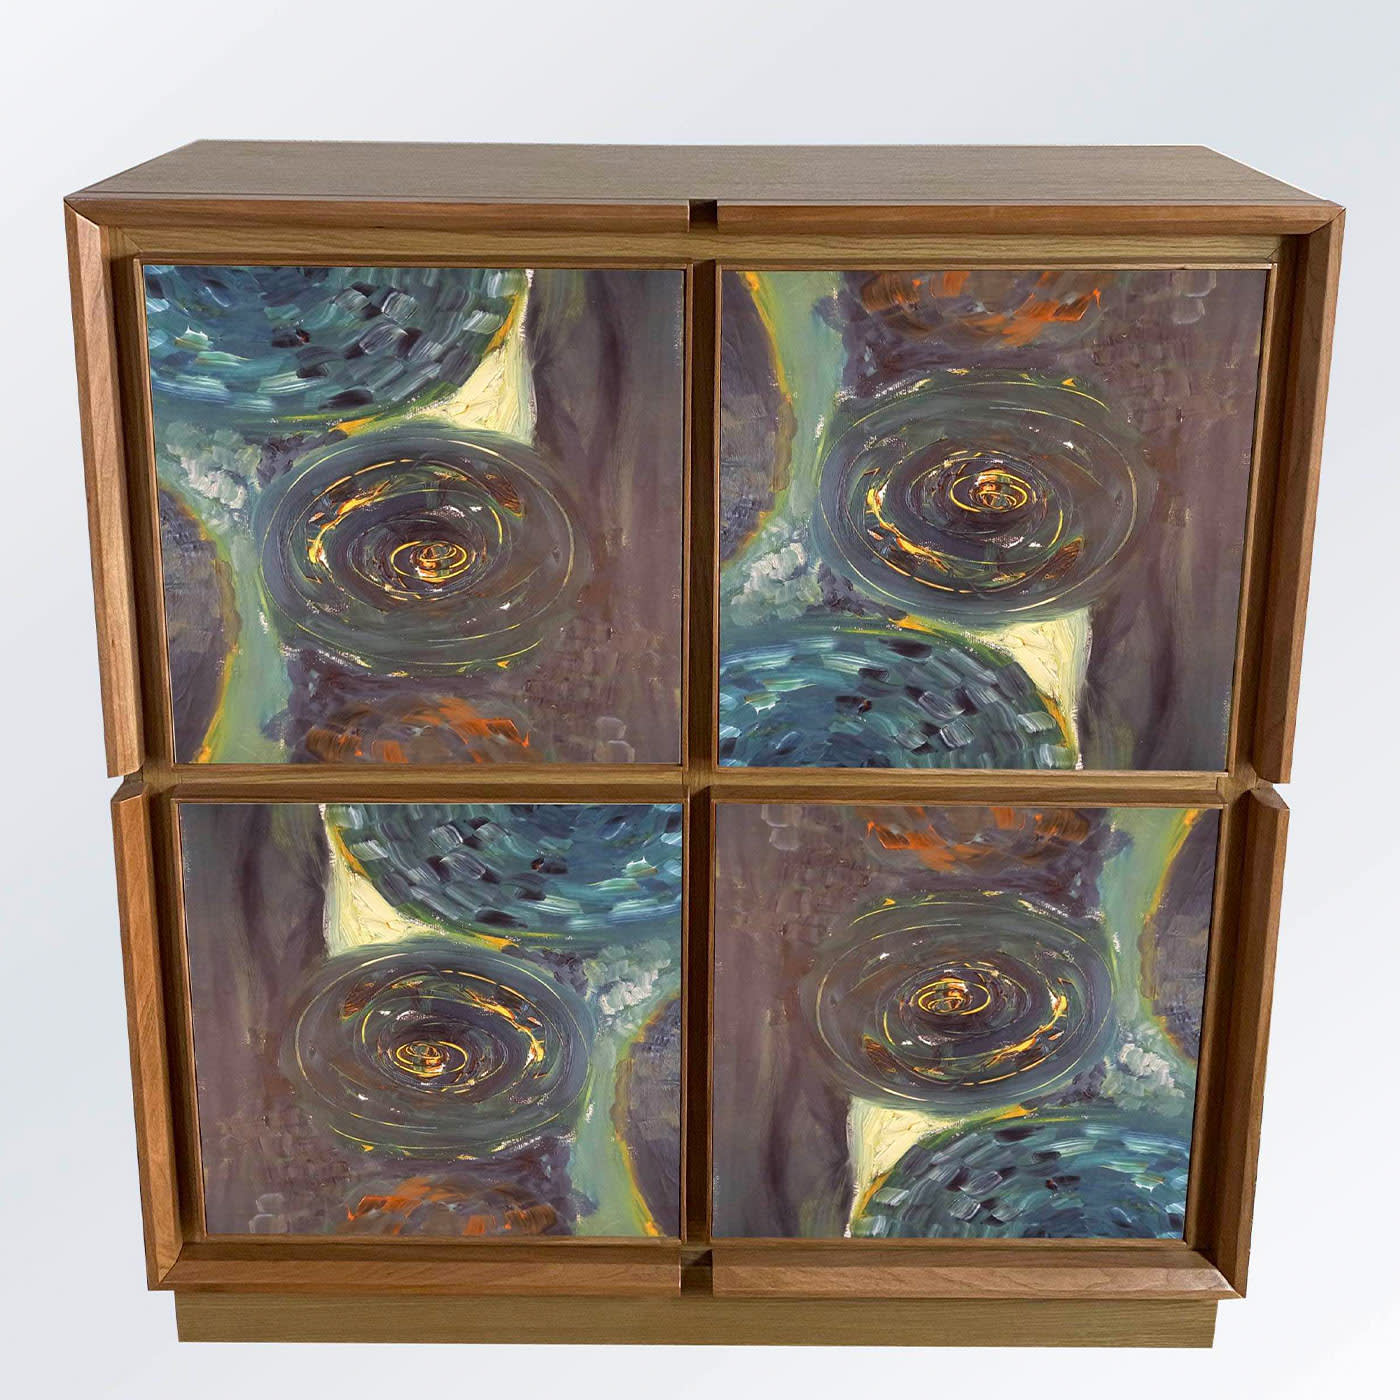 Astratta Sette Cabinet by Mascia Meccani - Meccani Design